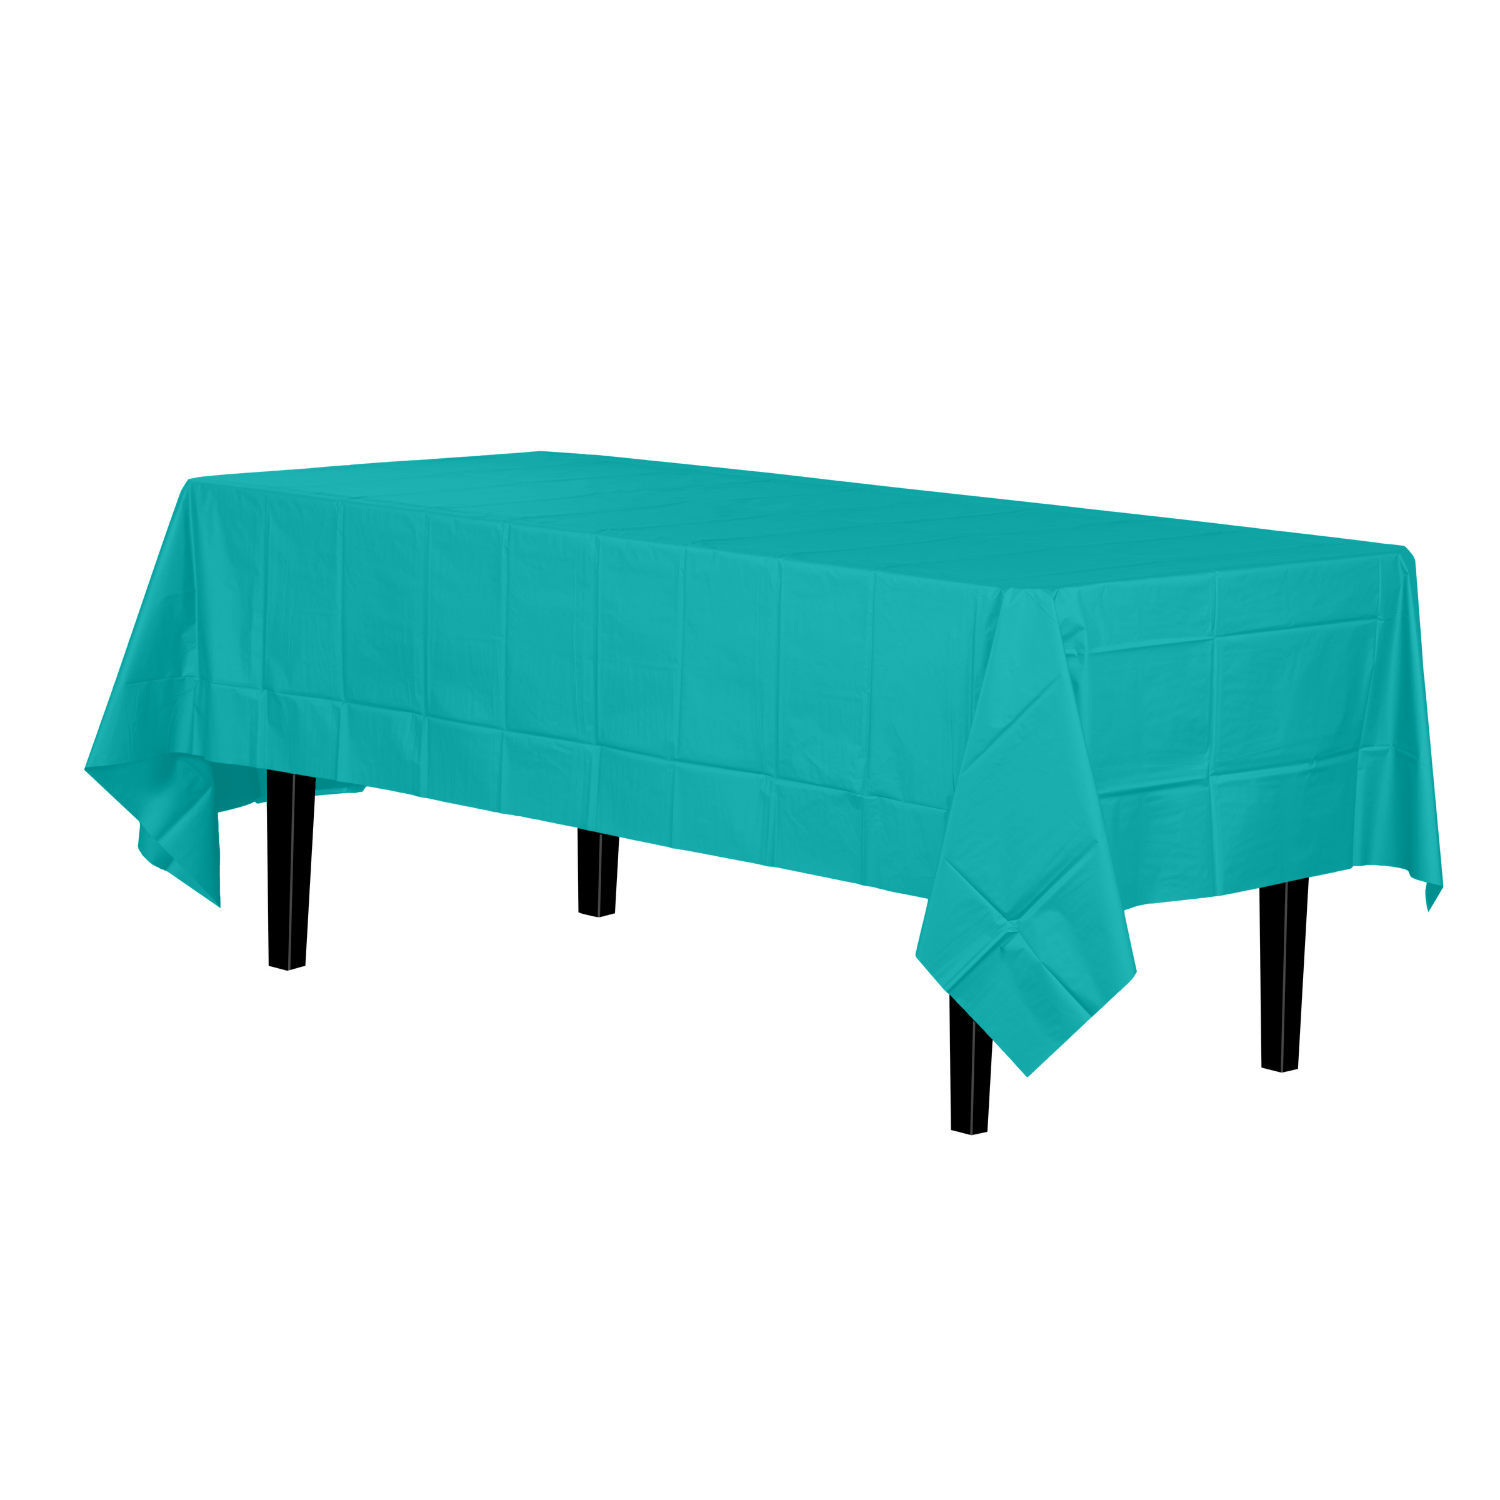 Premium Aqua Plastic Tablecloth | 96 Count